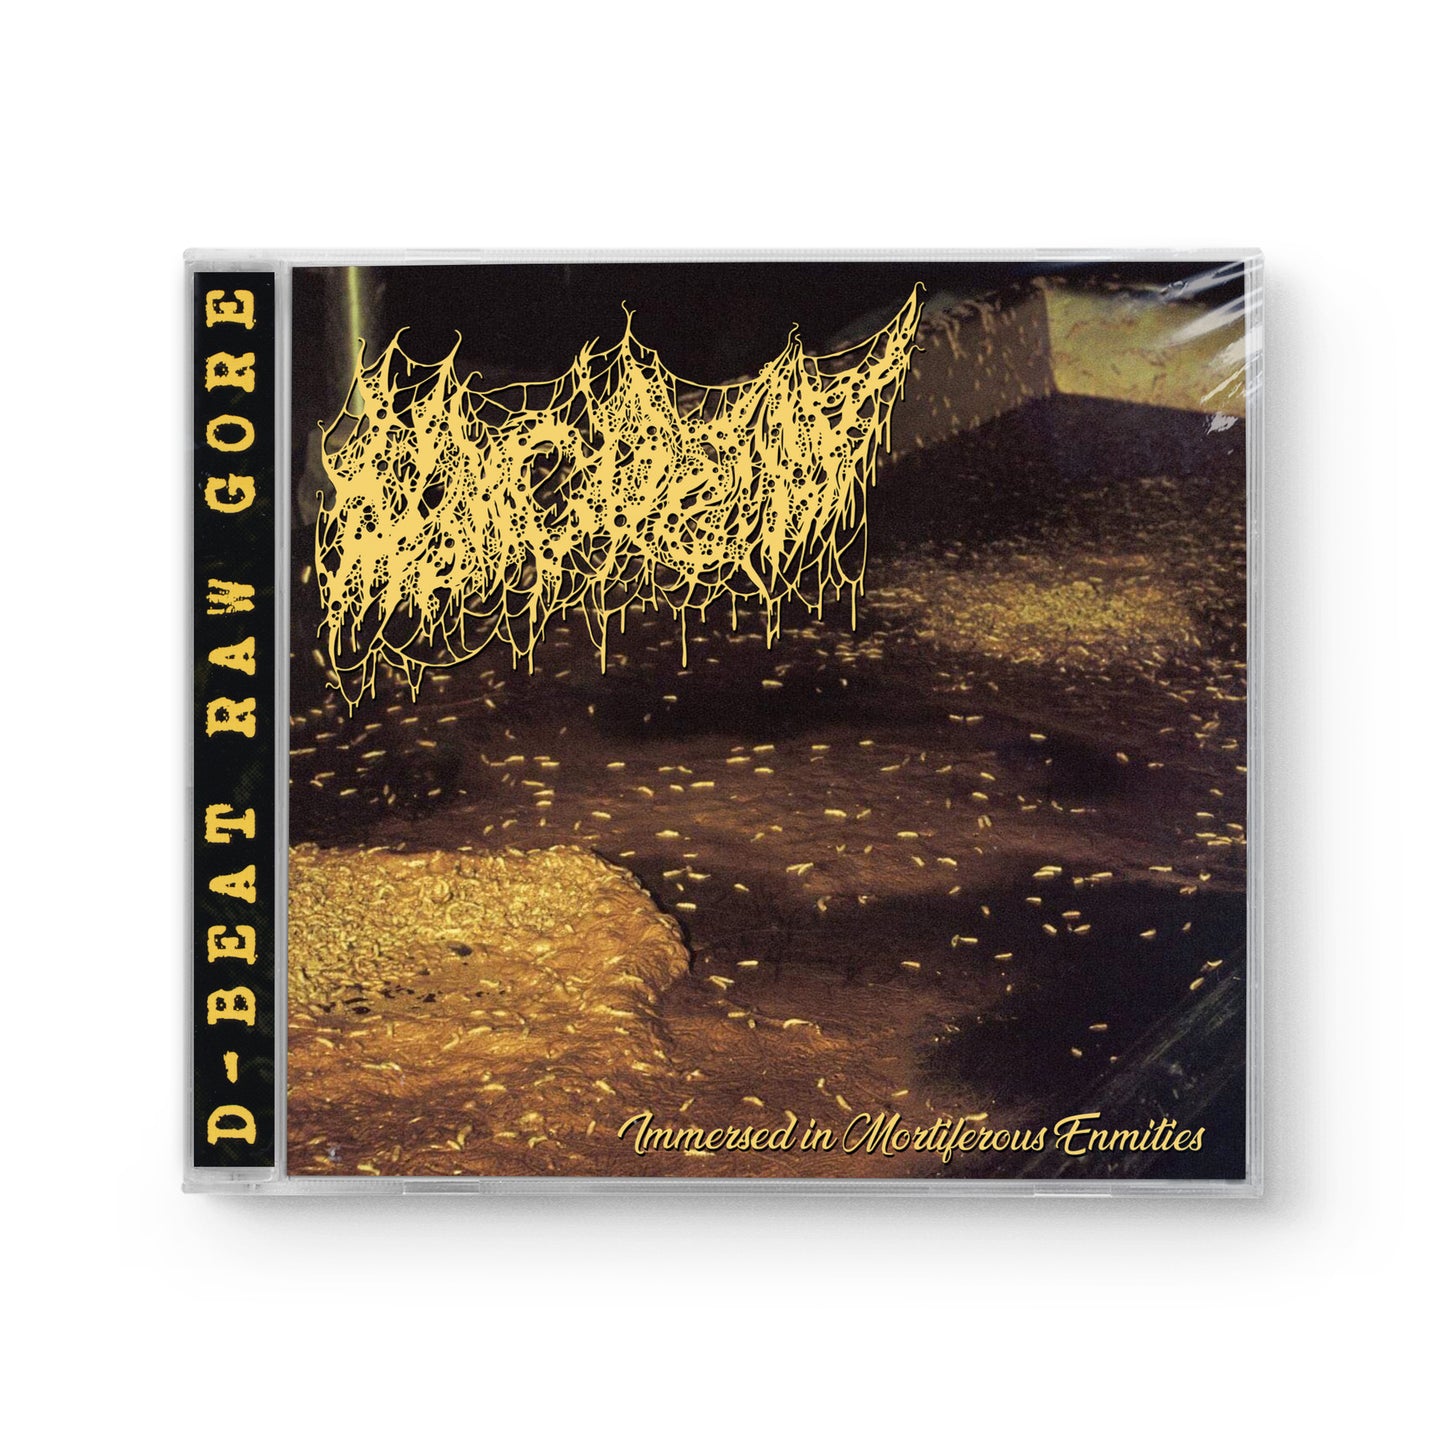 Morgue Tar "Immersed In Mortiferous Enmities" CD